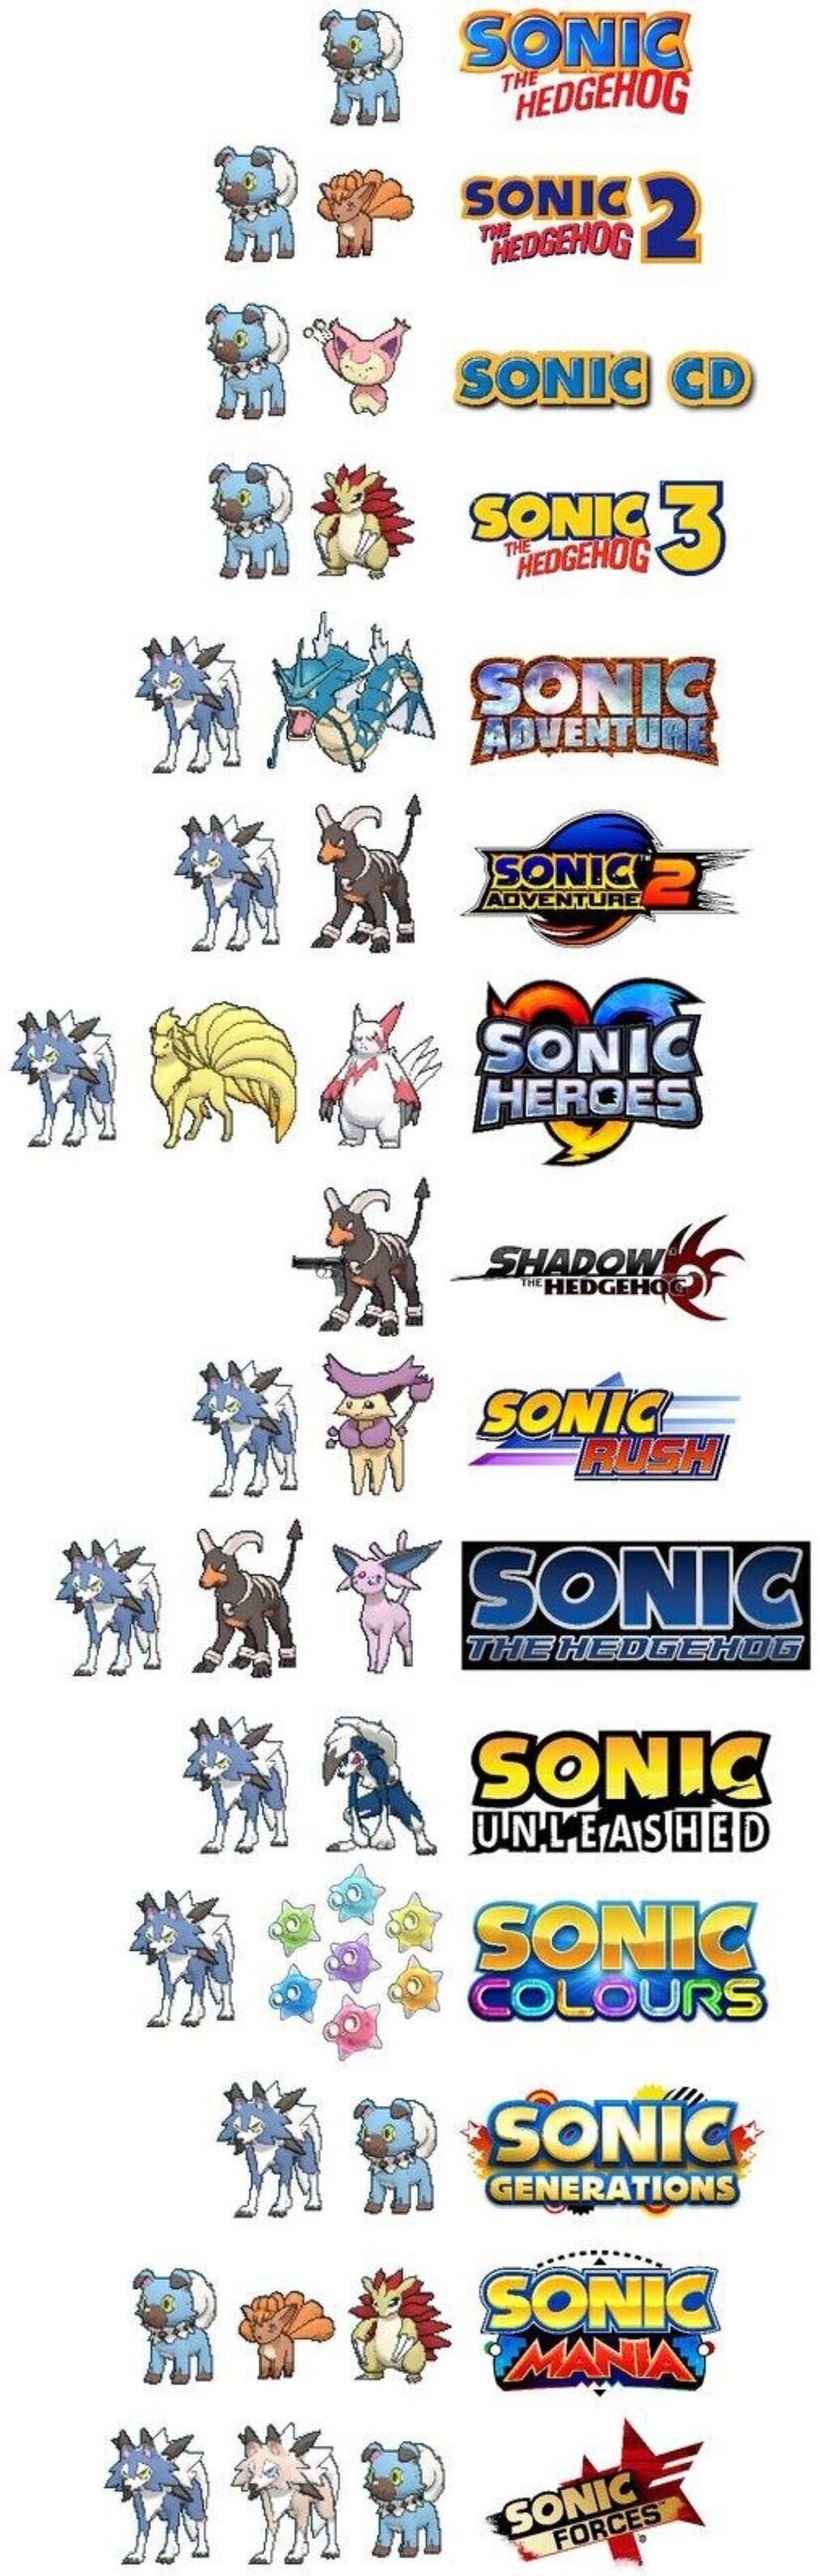 Lo que pasa si mezclas Pokémon y todos los juegos de Sonic 